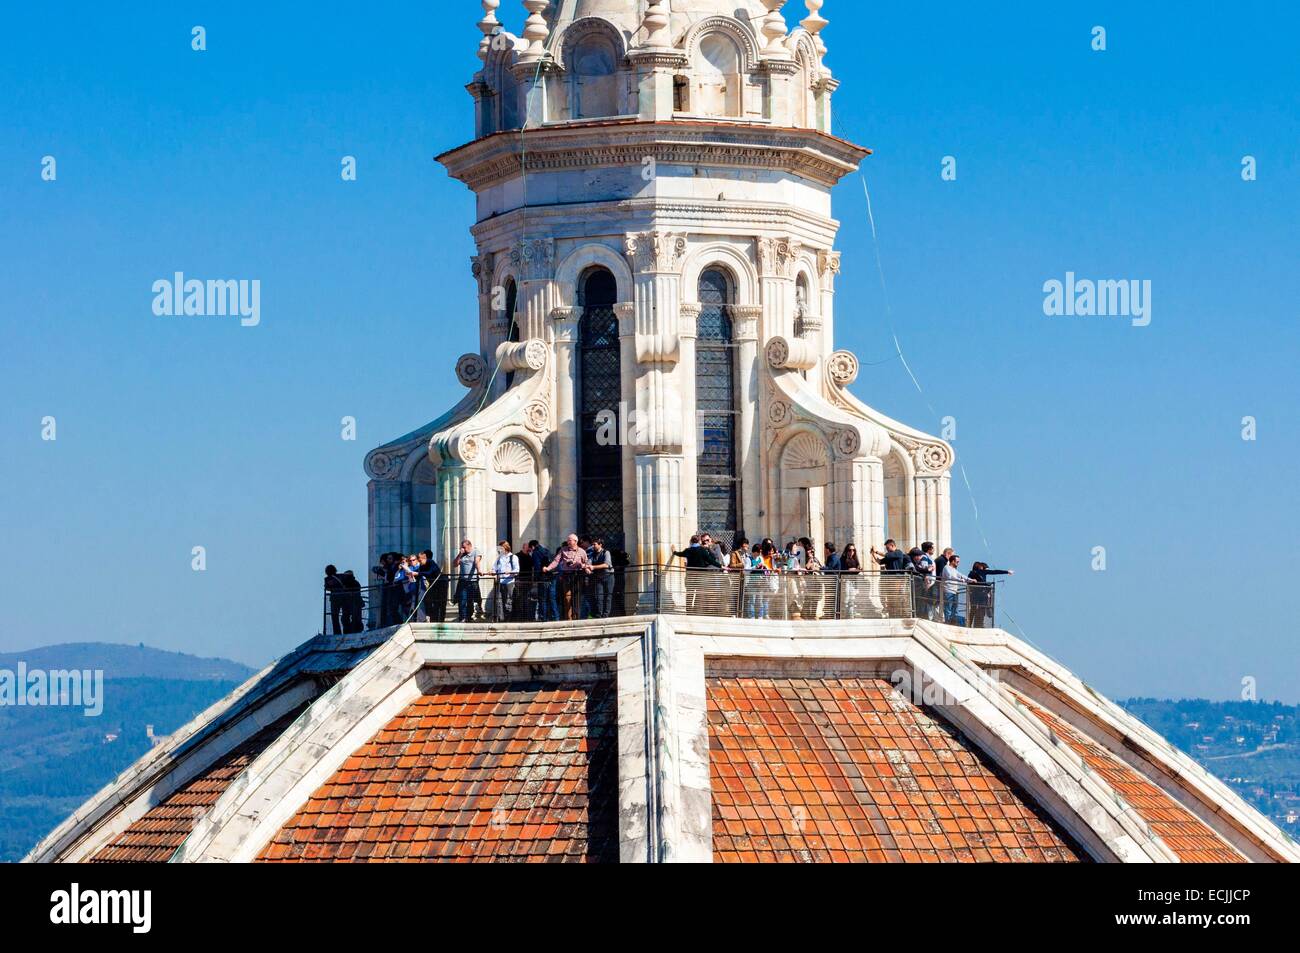 Italie, Toscane, Florence, Site du patrimoine mondial de l'UNESCO, la cathédrale Santa Maria del Fiore, les touristes sur la plate-forme panoramique Banque D'Images